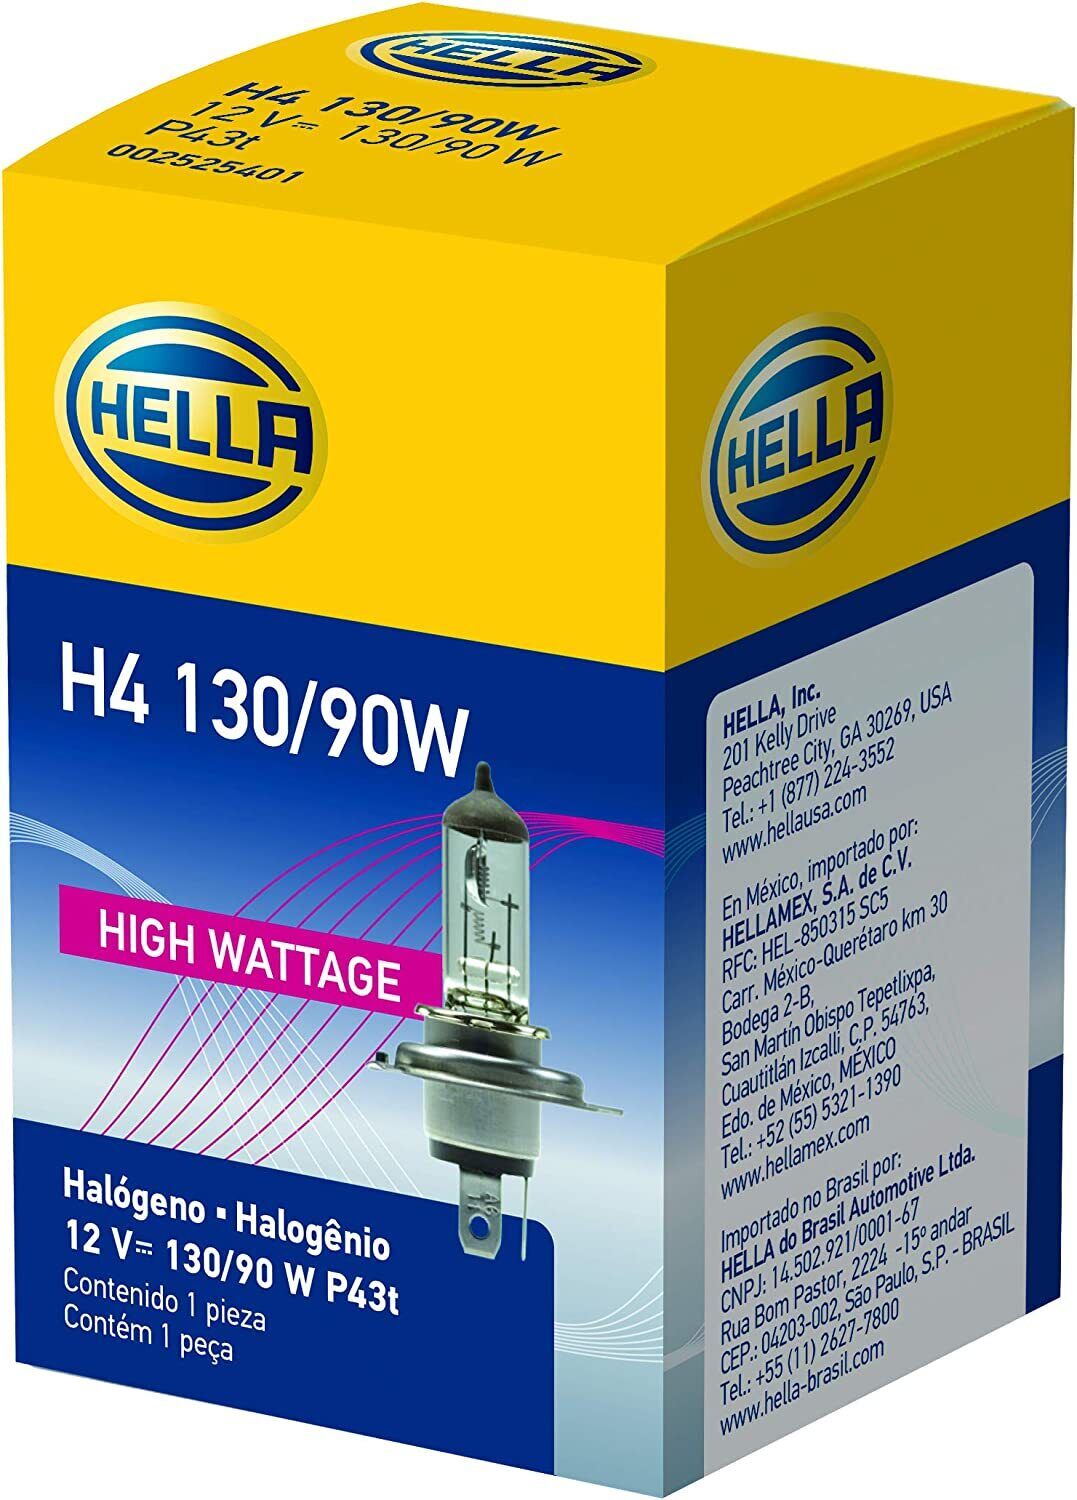 HELLA H4 130/90W High Wattage Bulb, 12V